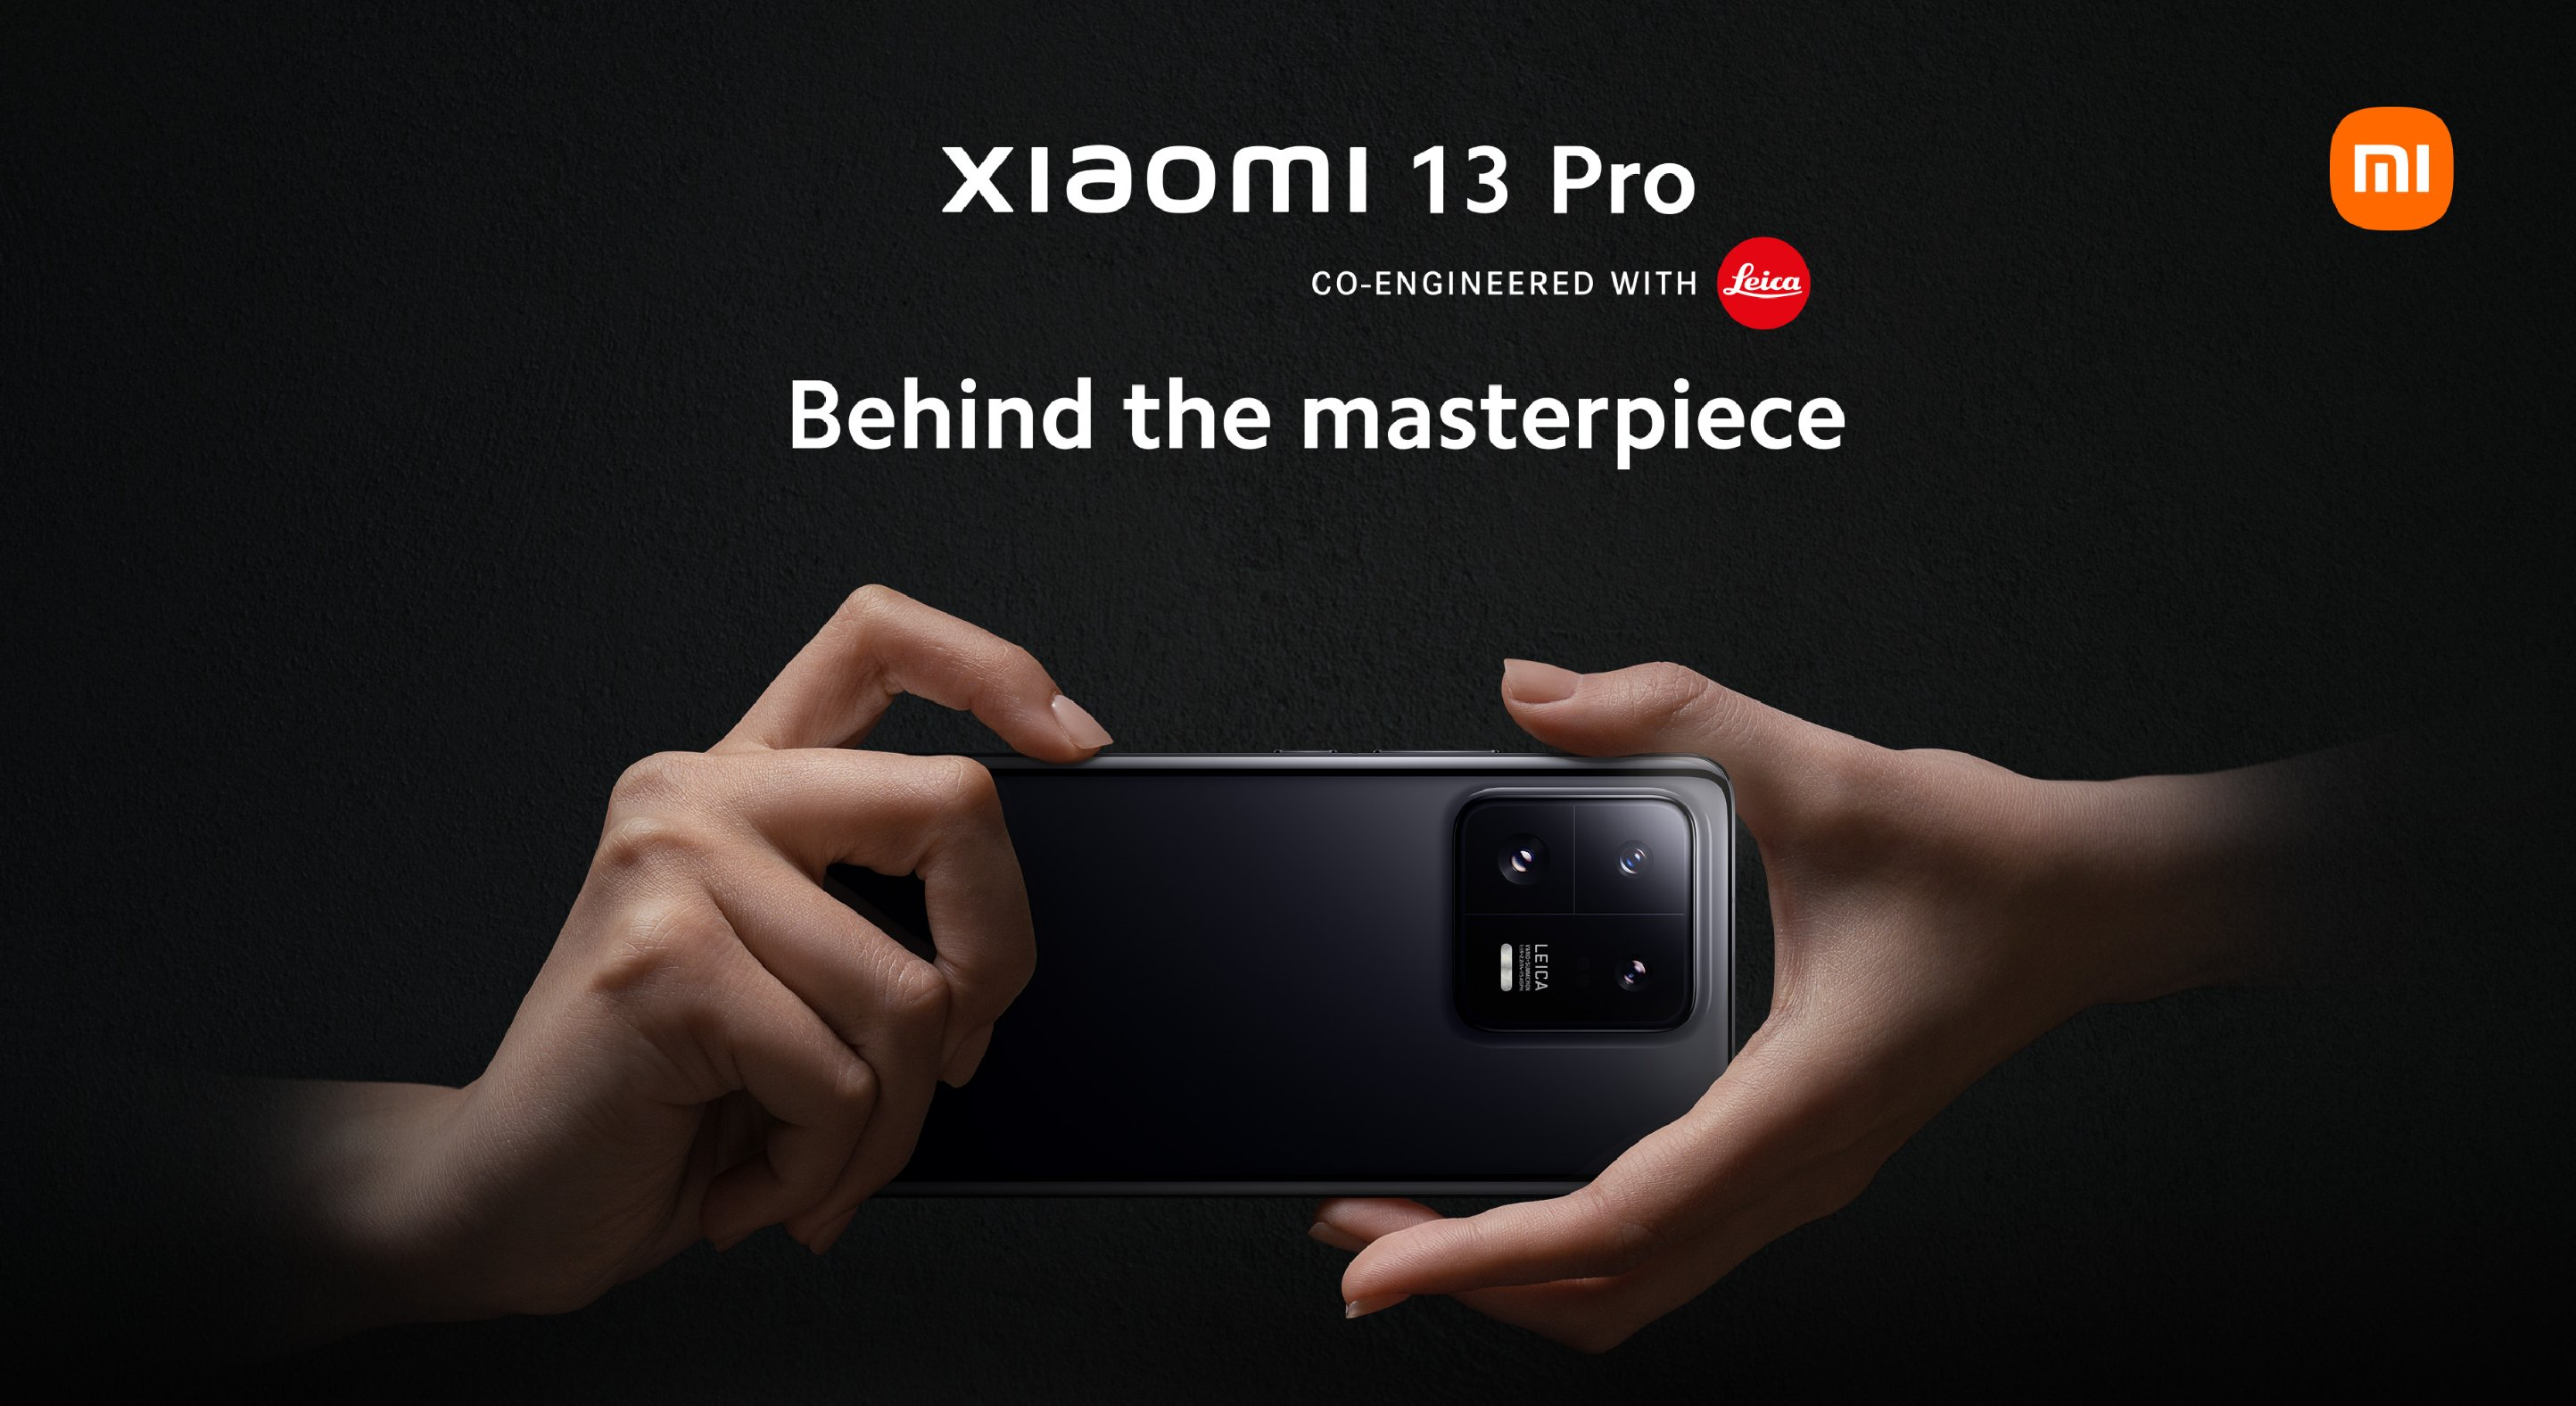 Snapdragon 8 Gen 2, wyświetlacz 3K 120Hz, trzy aparaty 50MP Leica z obsługą 8K UHD i IP68 cena od 1299 euro - Xiaomi 13 Pro ujawniony